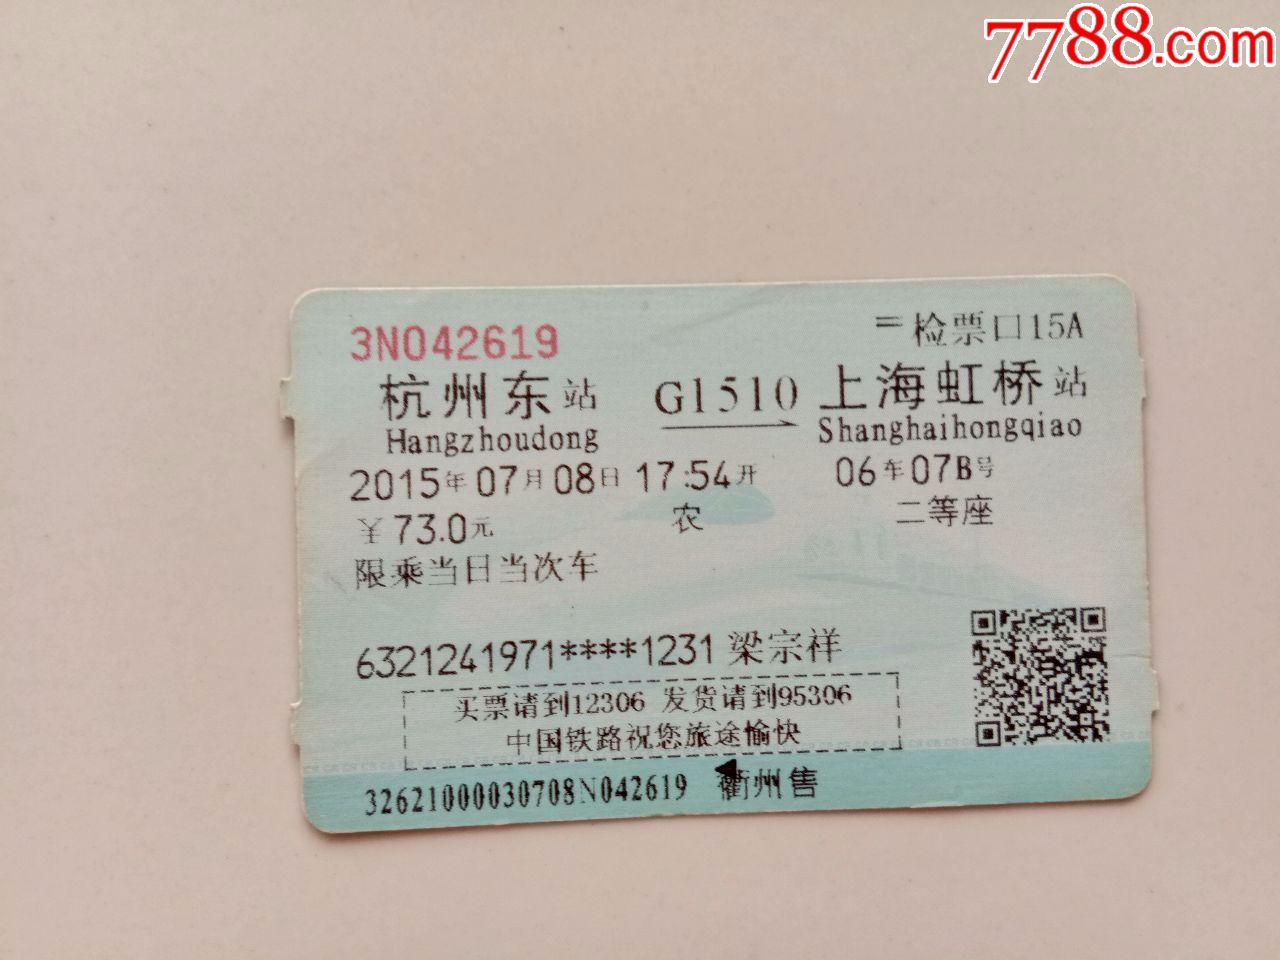 杭州东-G1510-上海虹桥